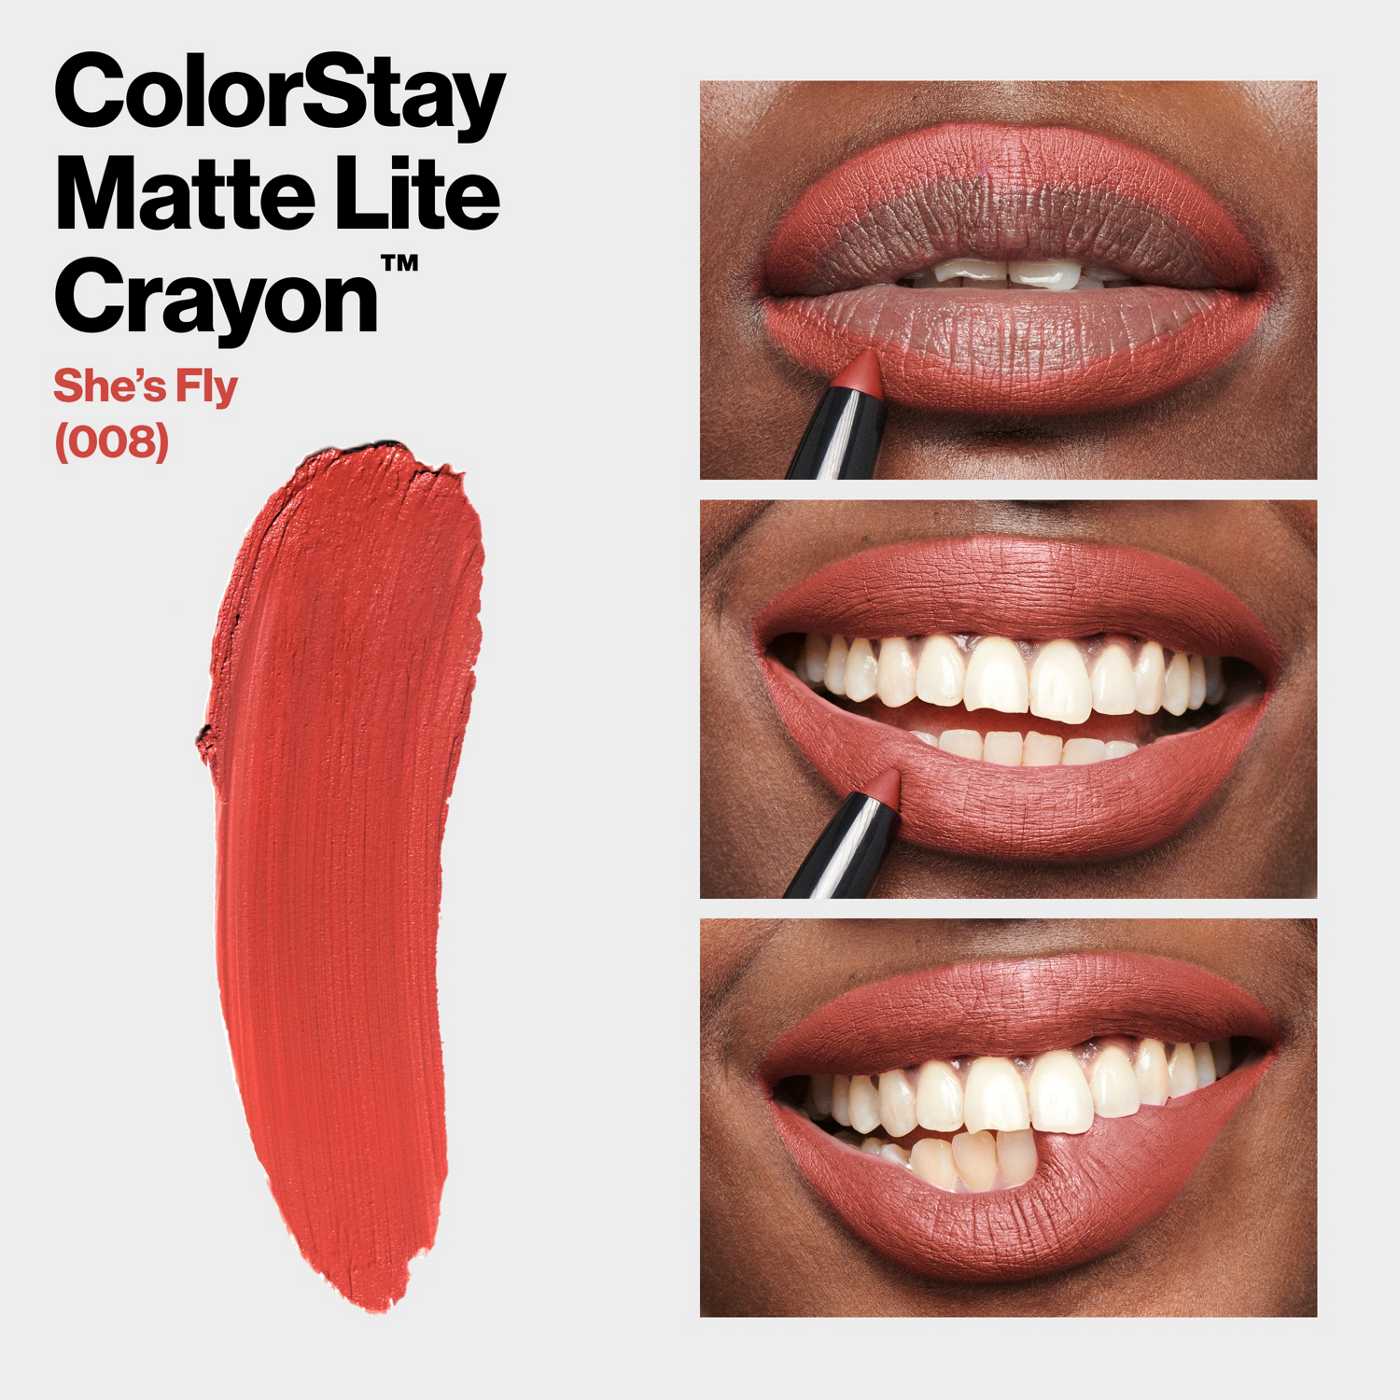 Revlon ColorStay Matte Lite Crayon Lipstick - She's Fly; image 3 of 7